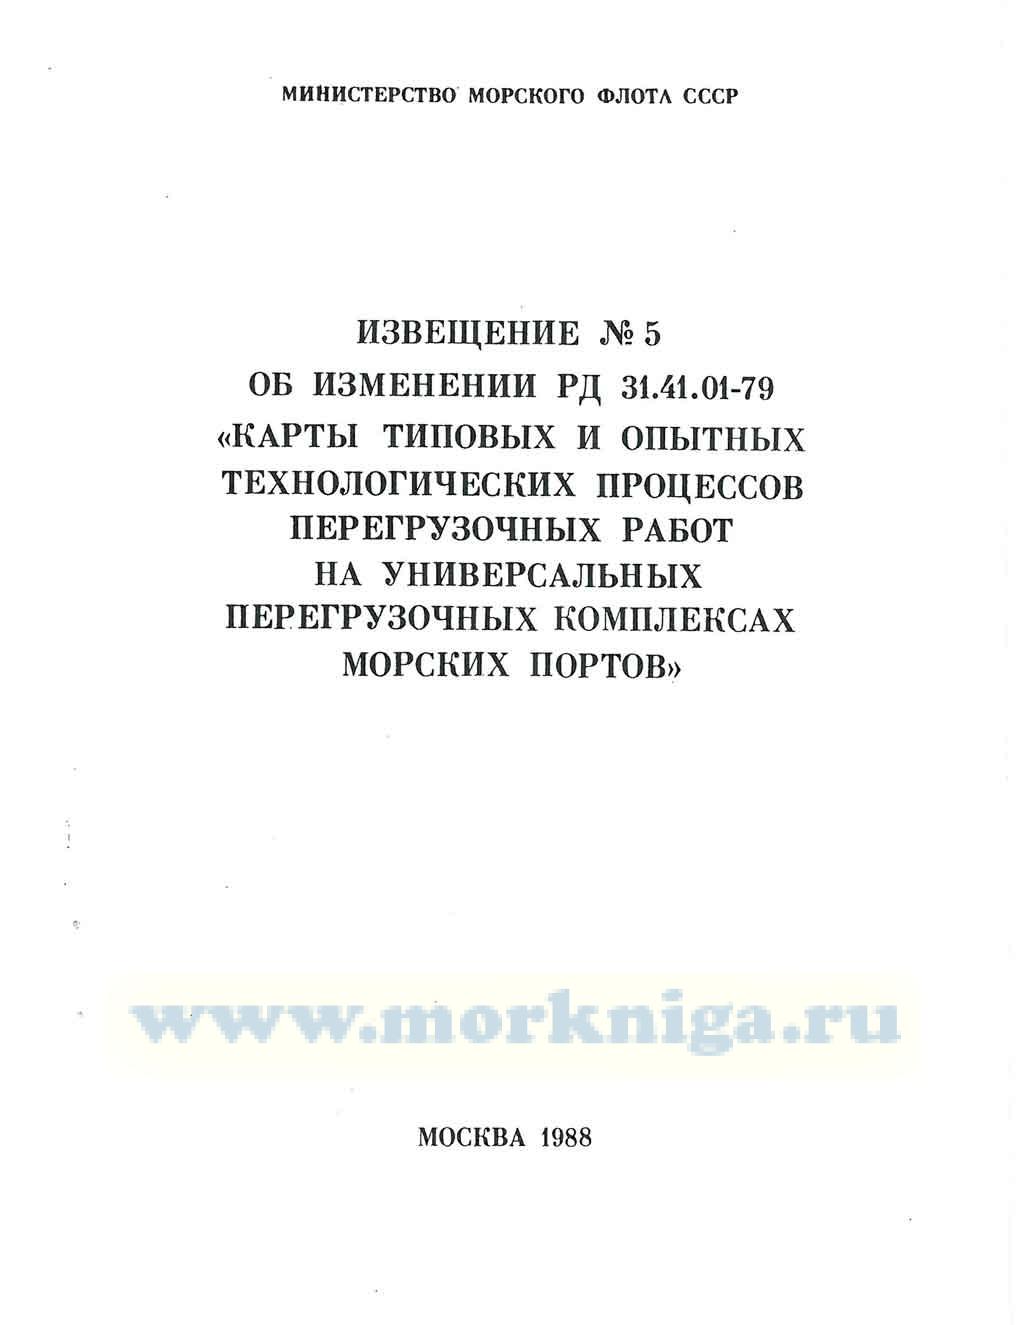 Извещение № 5 об изменениях к РД 31.41.01-79 